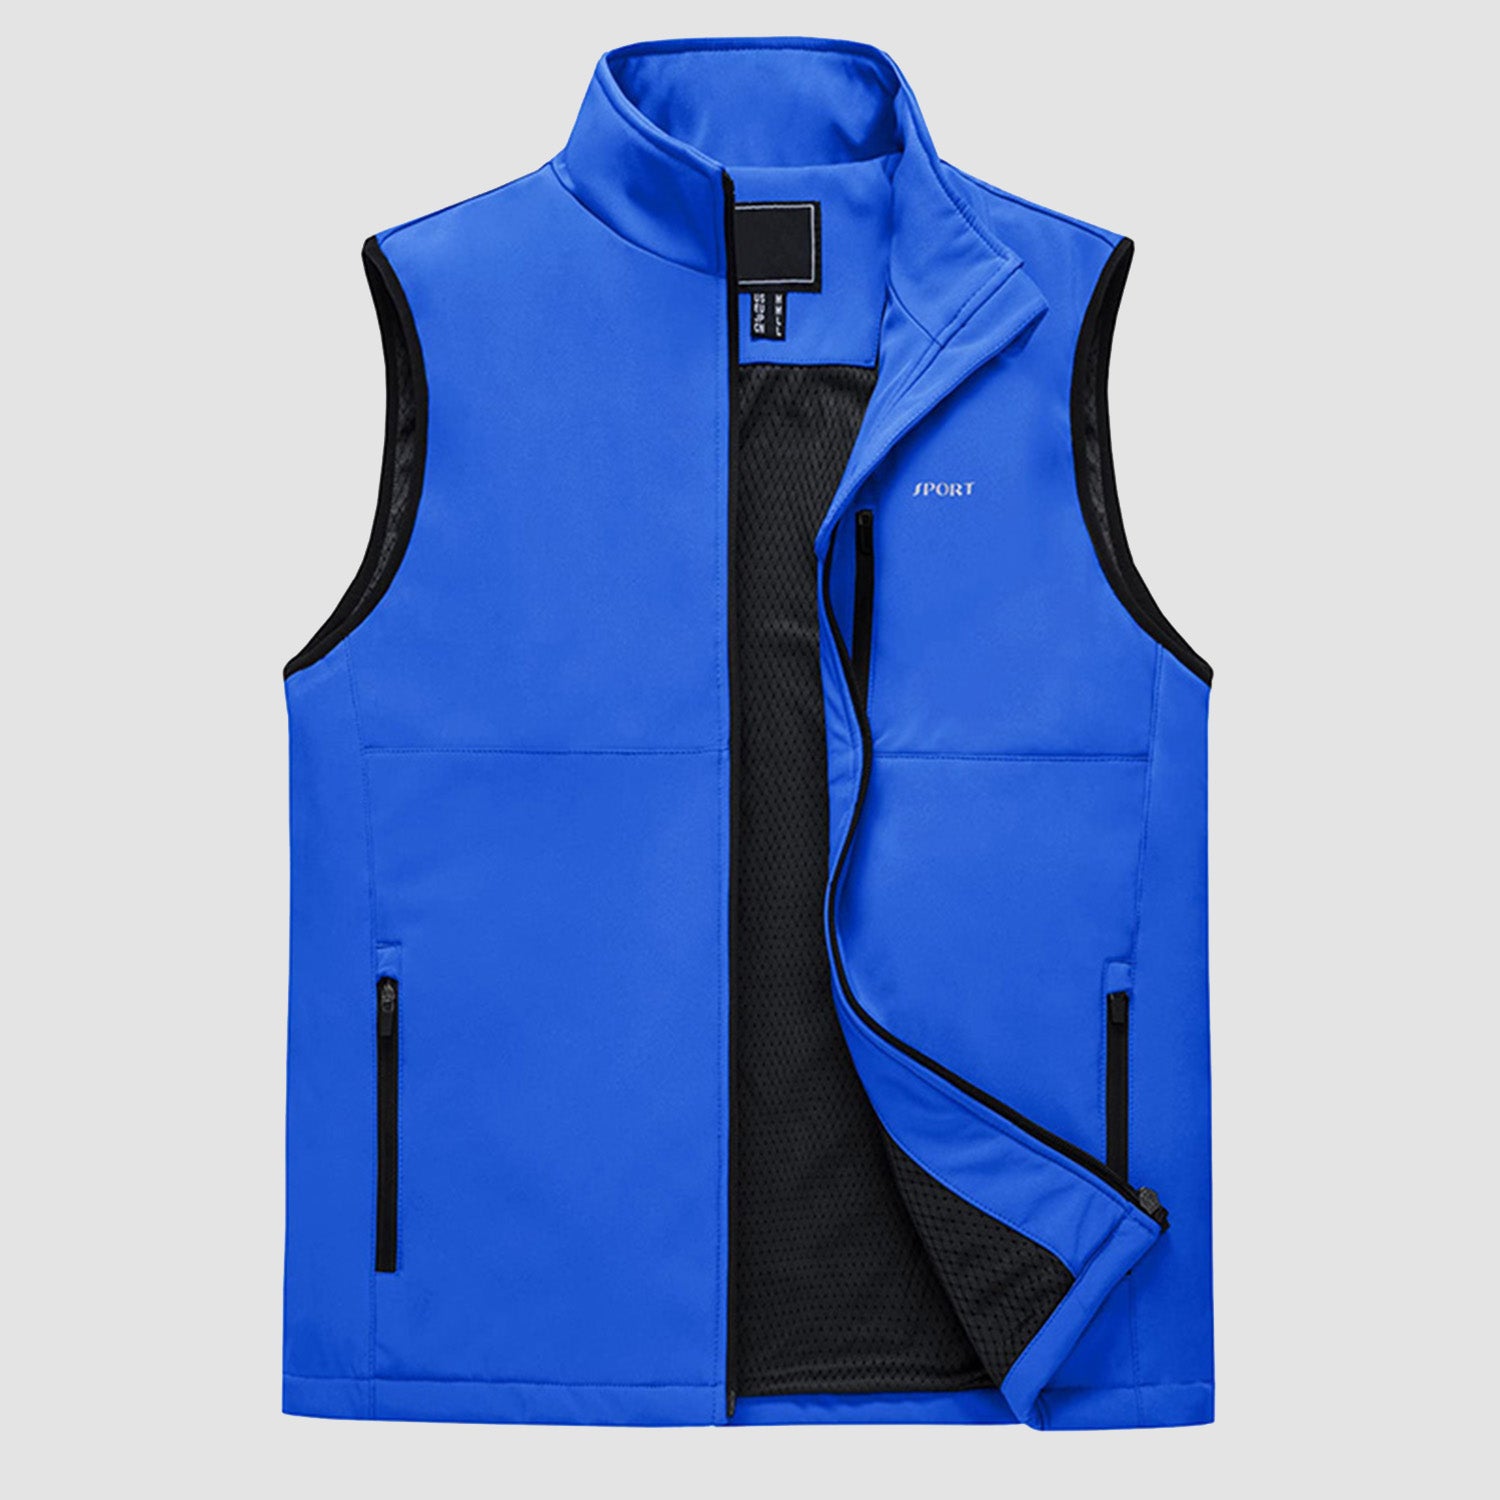 Men's Lightweight Vest Zip-up Sleeveless Jacket for Outdoors